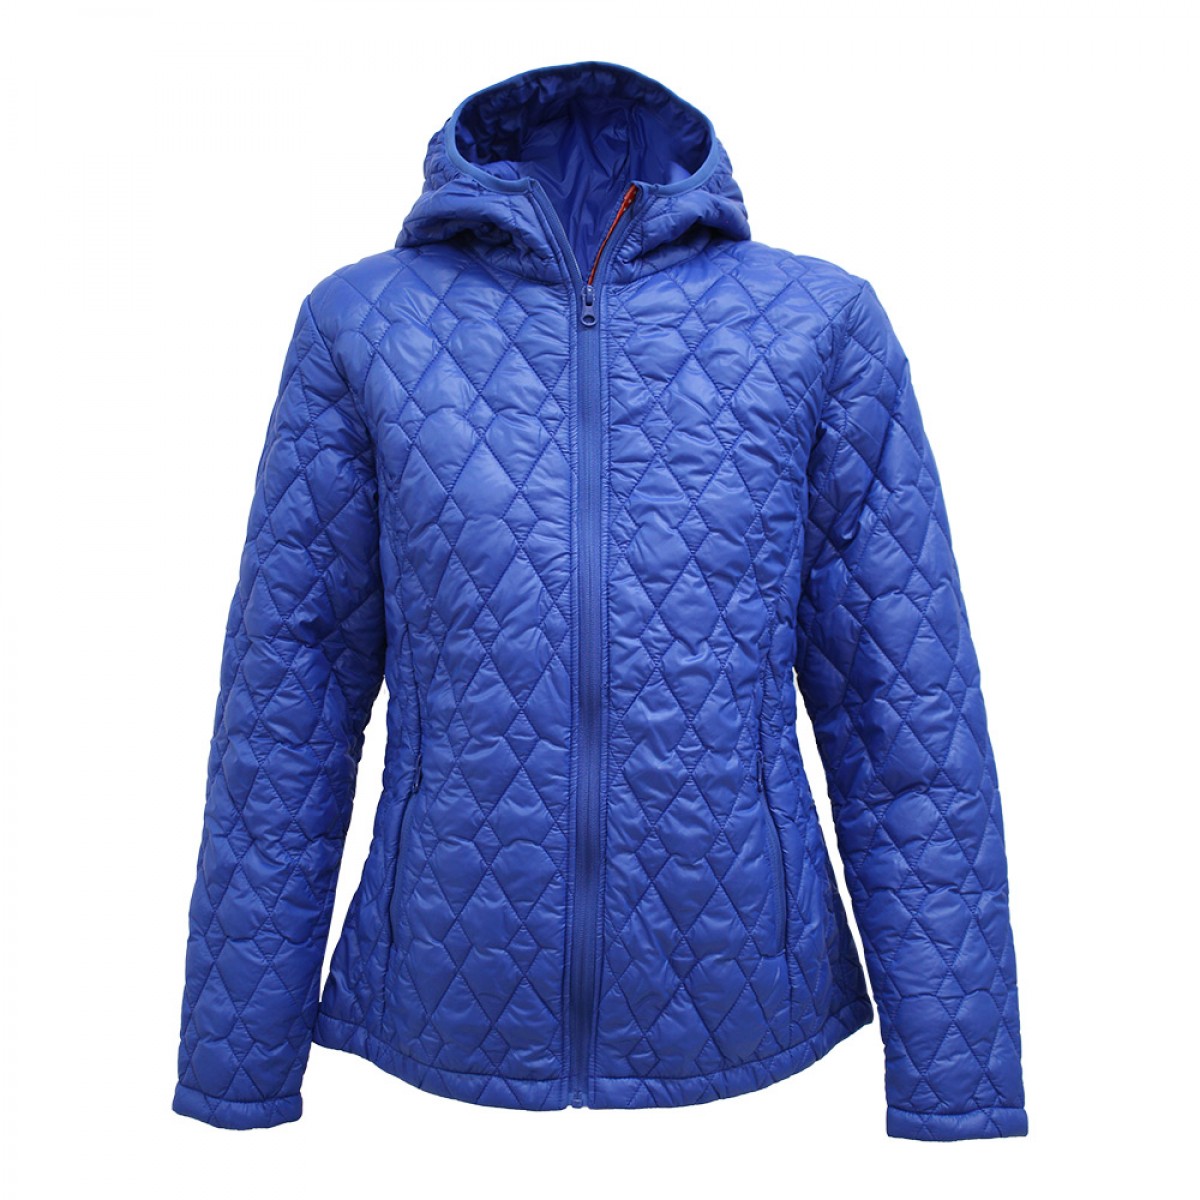 women-polyfiber-jacket-with-hoodie-kpj06913-5b